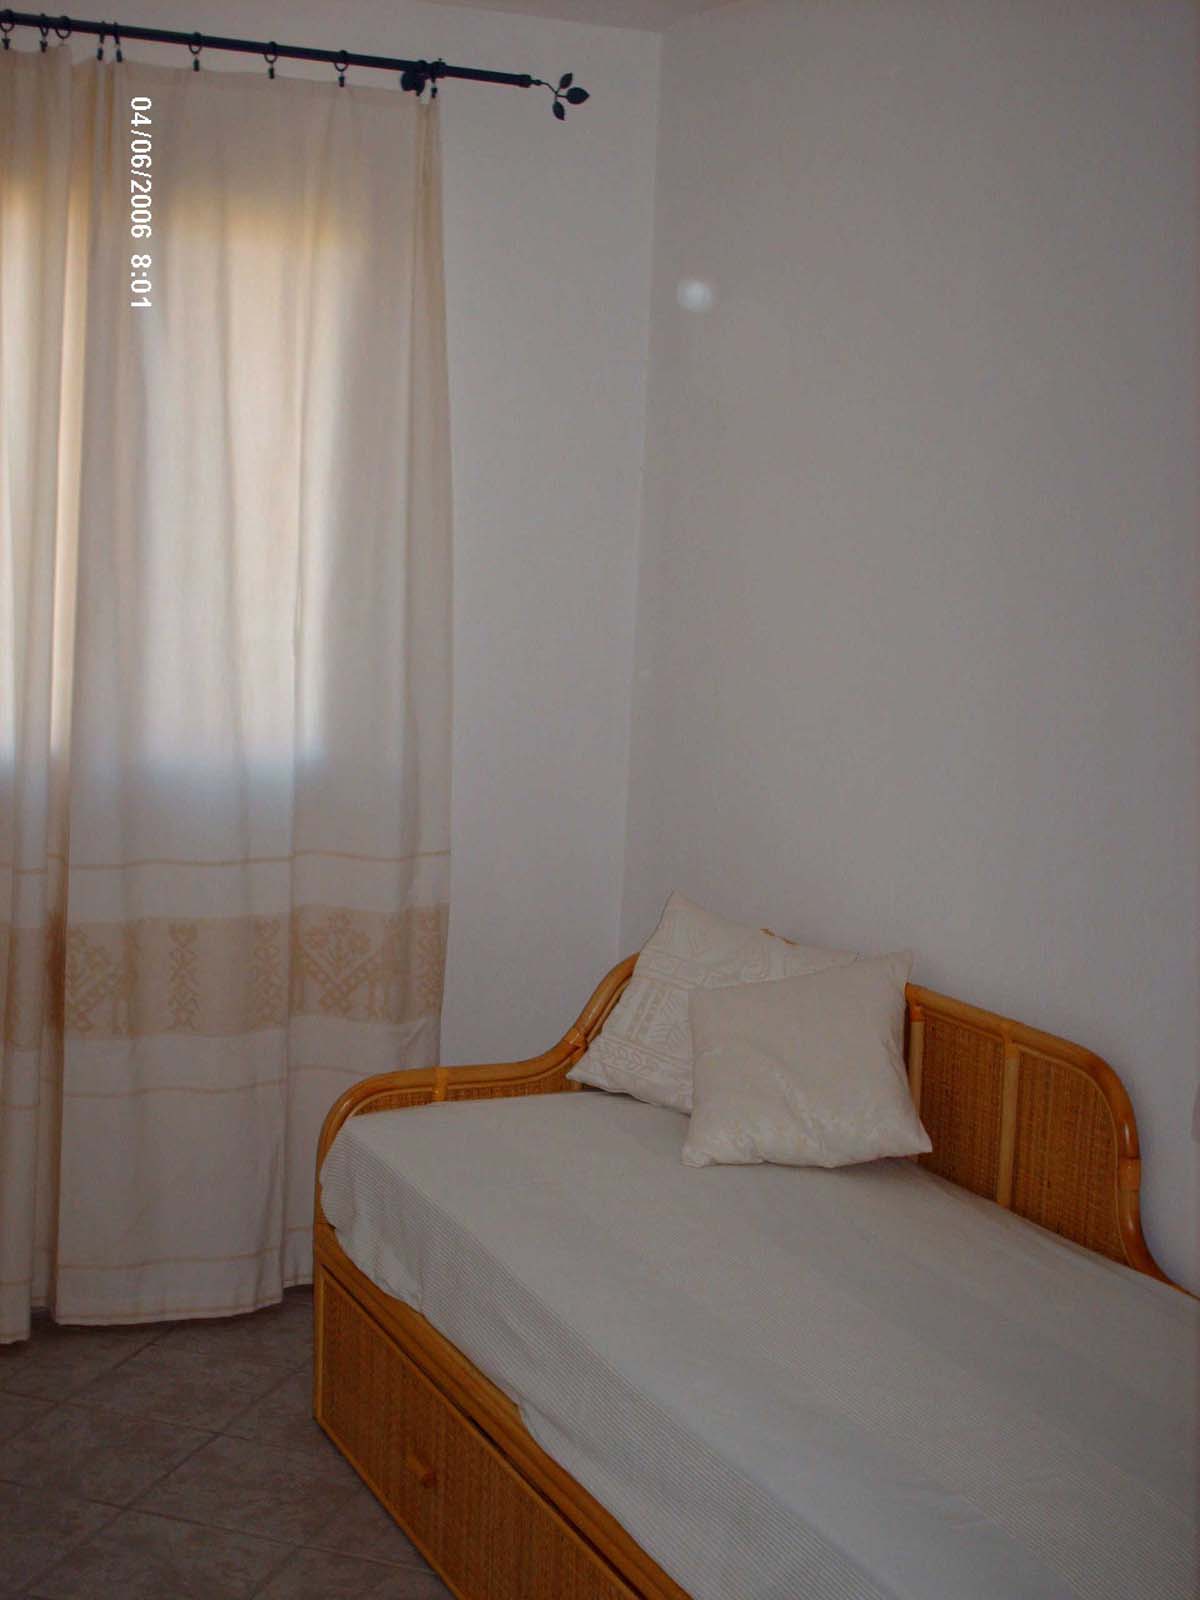 seconda camera da letto - Appartamento vacanze al mare vicino Olbia San Teodoro casa in Sardegna annunci affitto estate - Fotografie case in zona